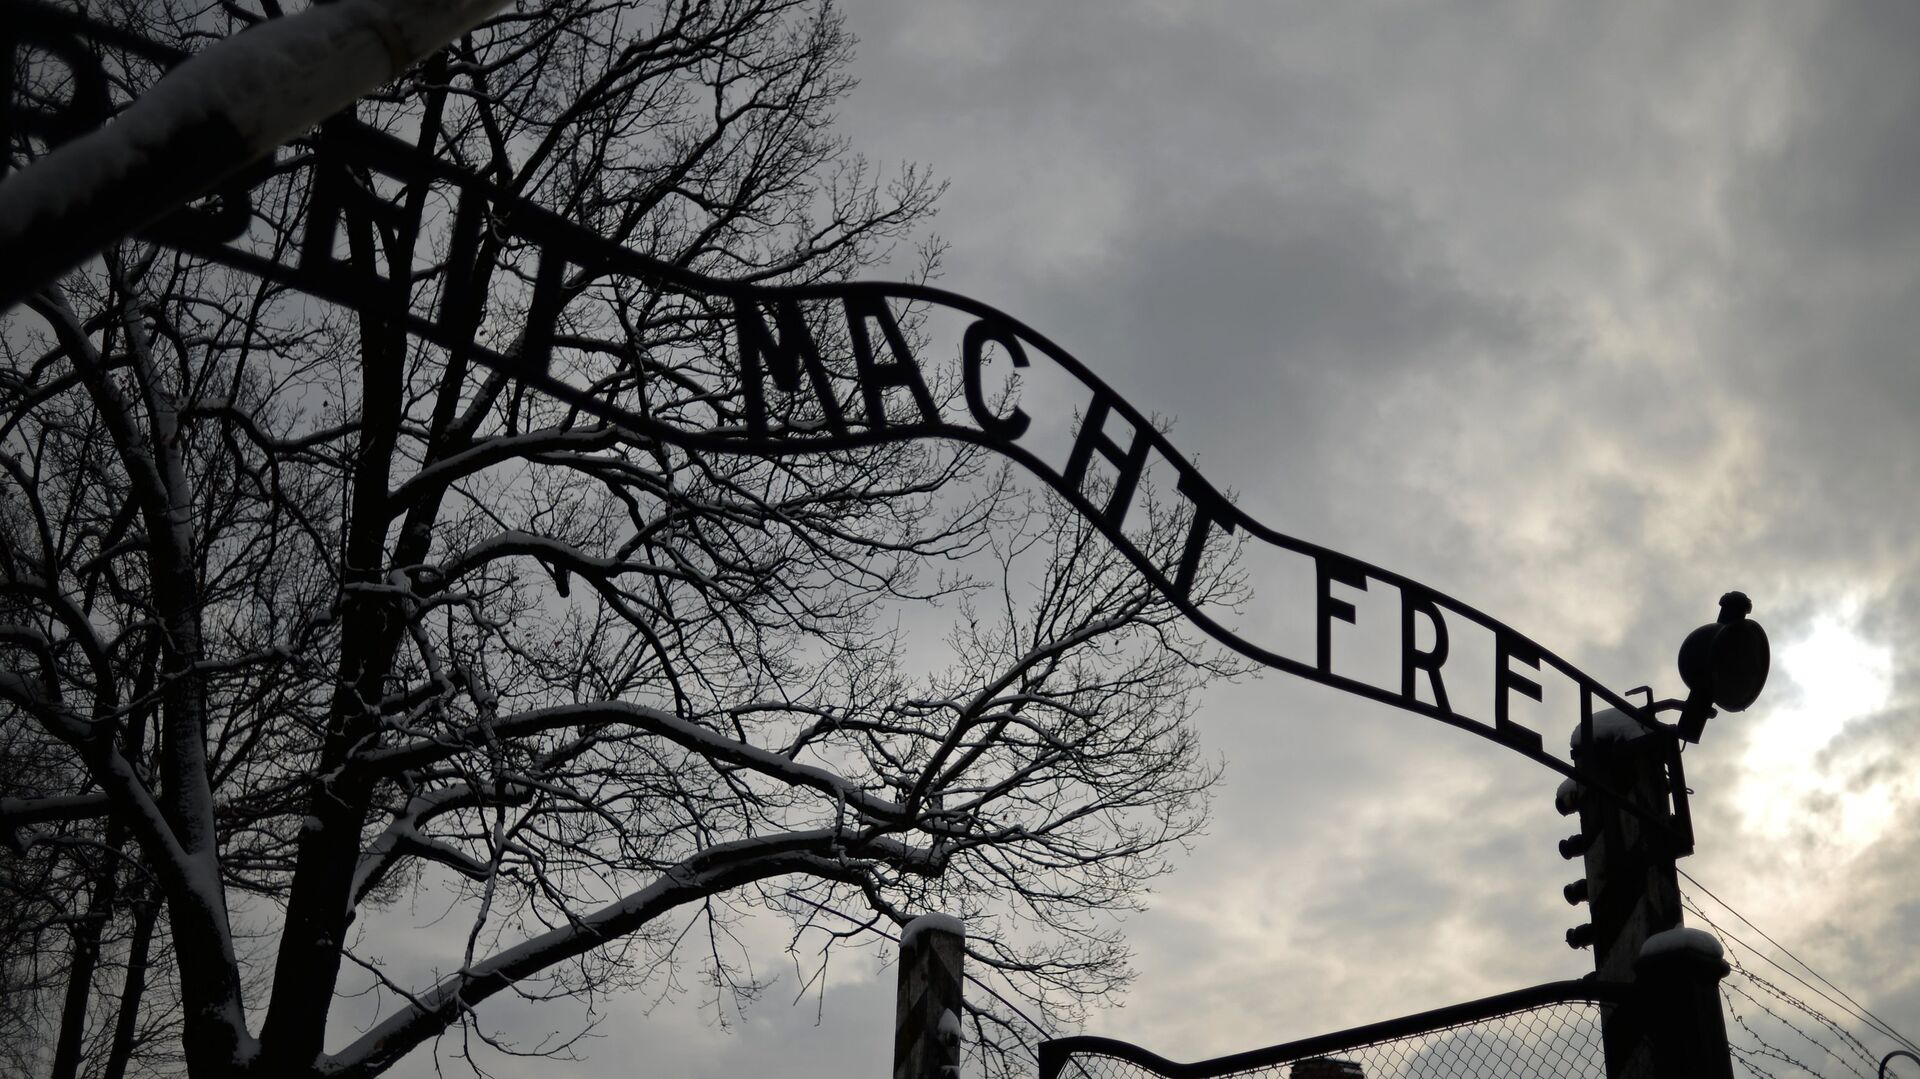 Центральные ворота бывшего концентрационного лагеря Аушвиц-Биркенау в Освенциме - РИА Новости, 1920, 06.11.2018